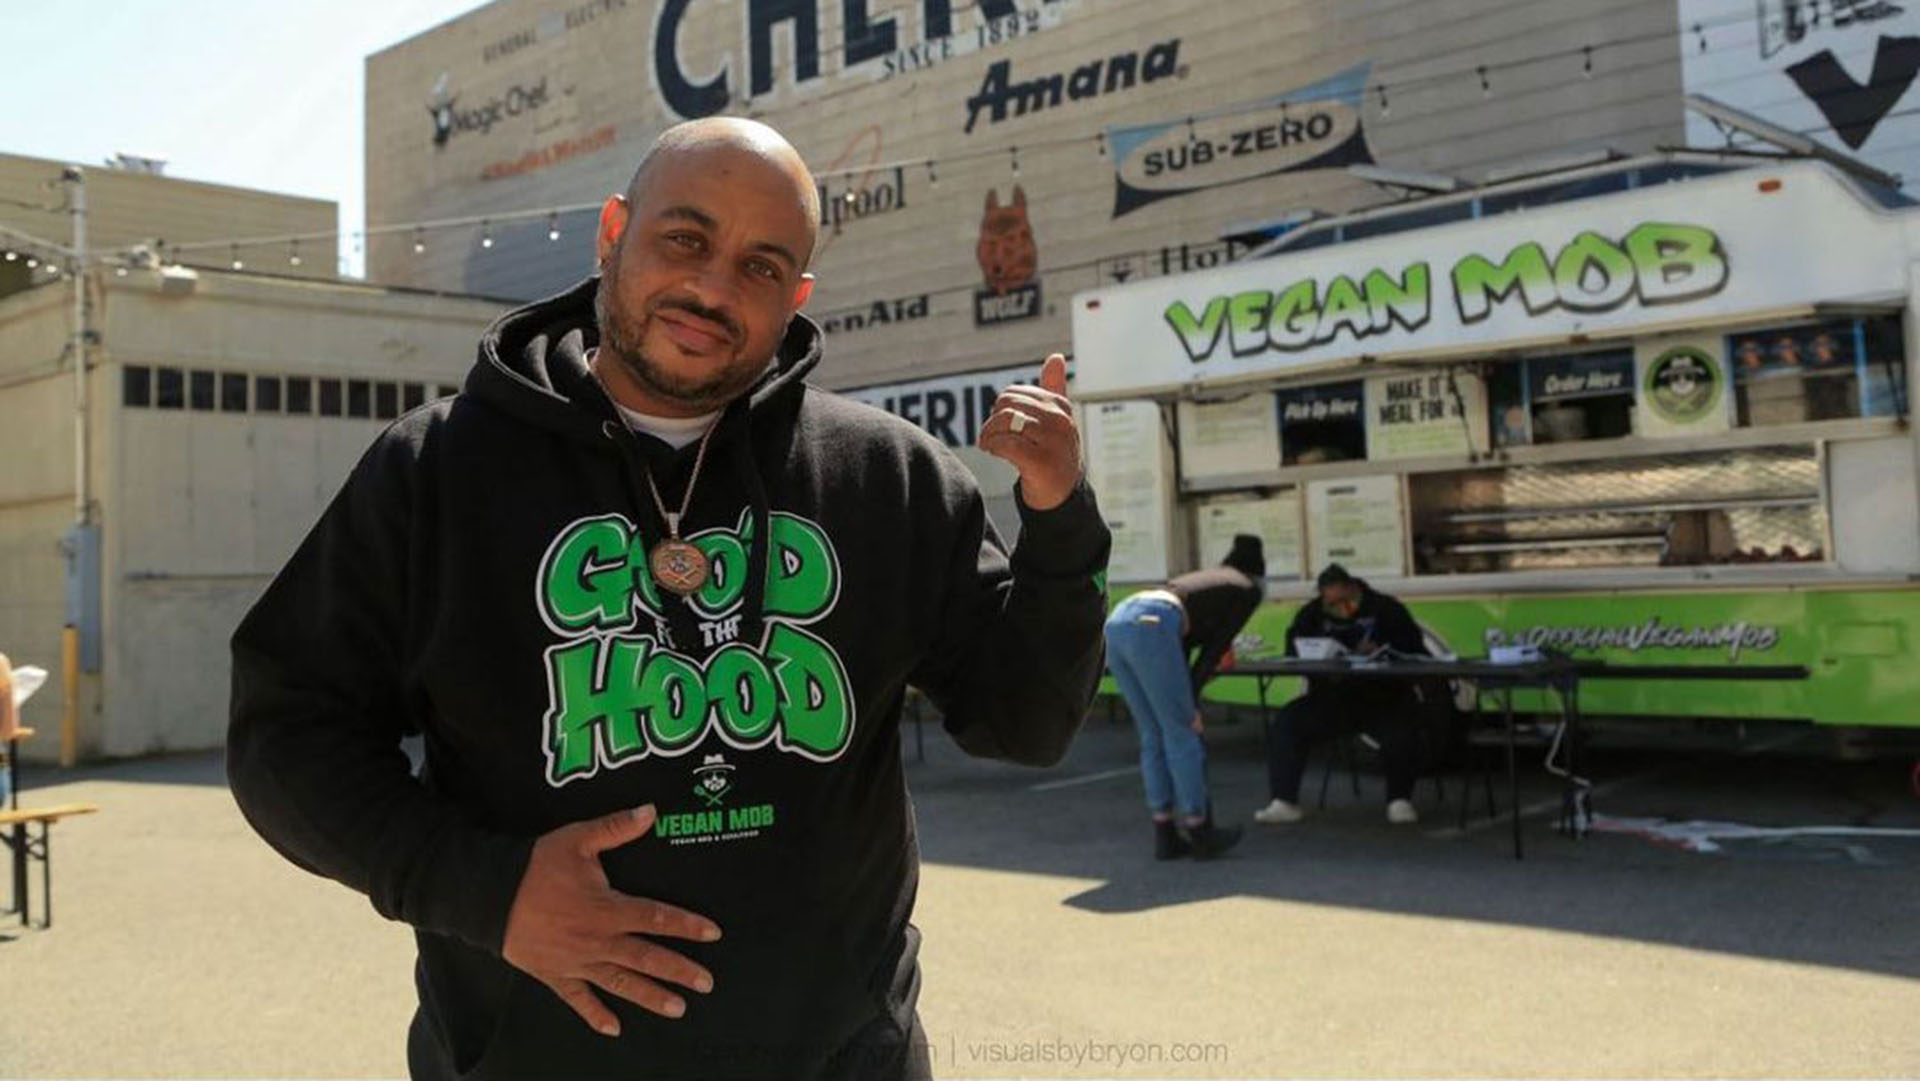 Man in a black "Good Hood" sweatshirt gestures toward the Vegan Mob food truck behind him.